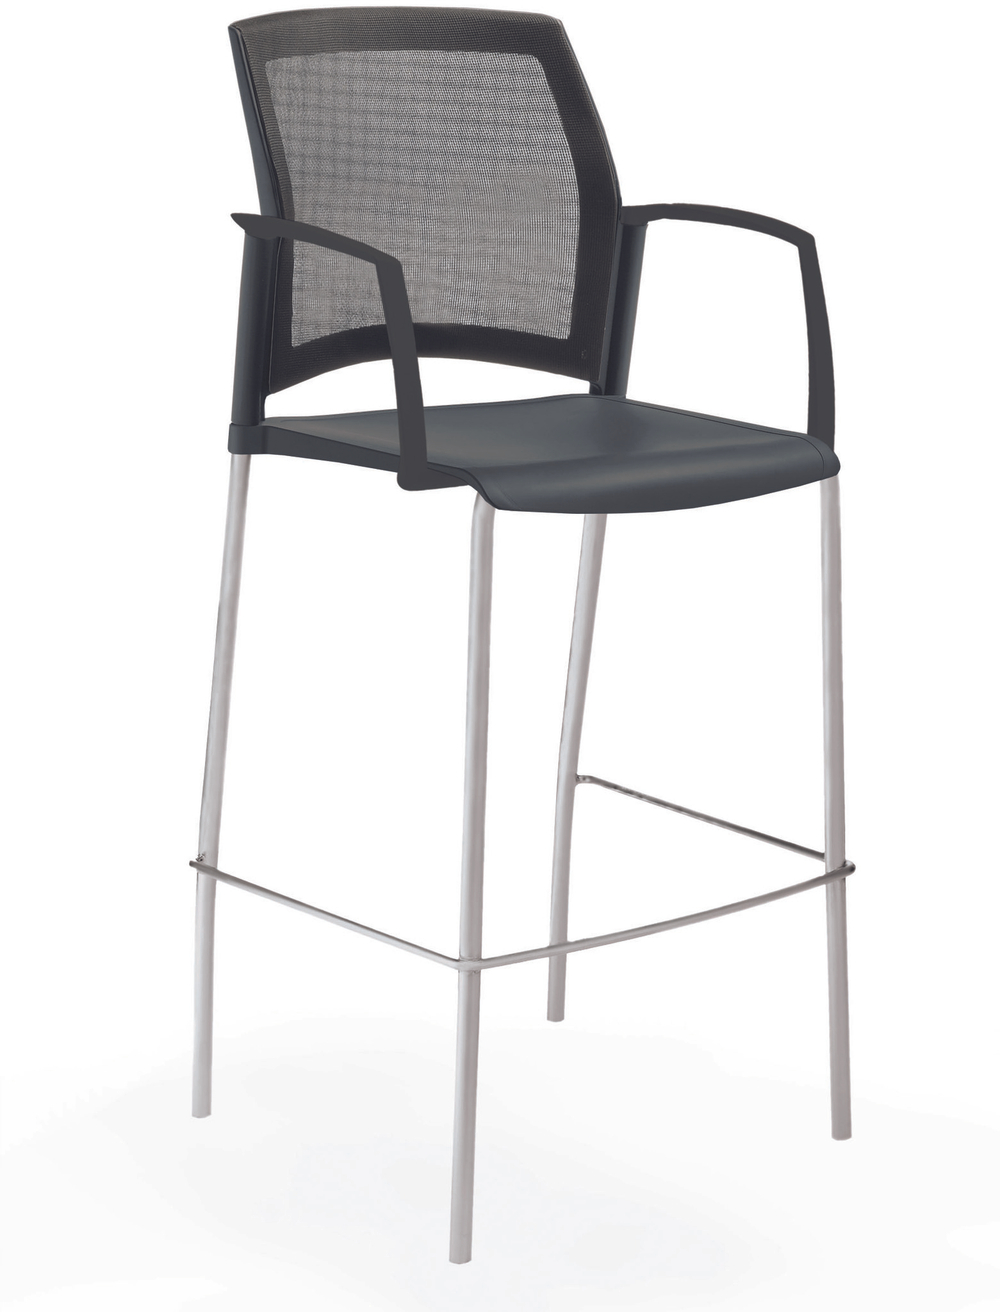 стул Rewind стул барный на 4 ногах, каркас серый, пластик черный, спинка-сетка, с закрытыми подлокотниками